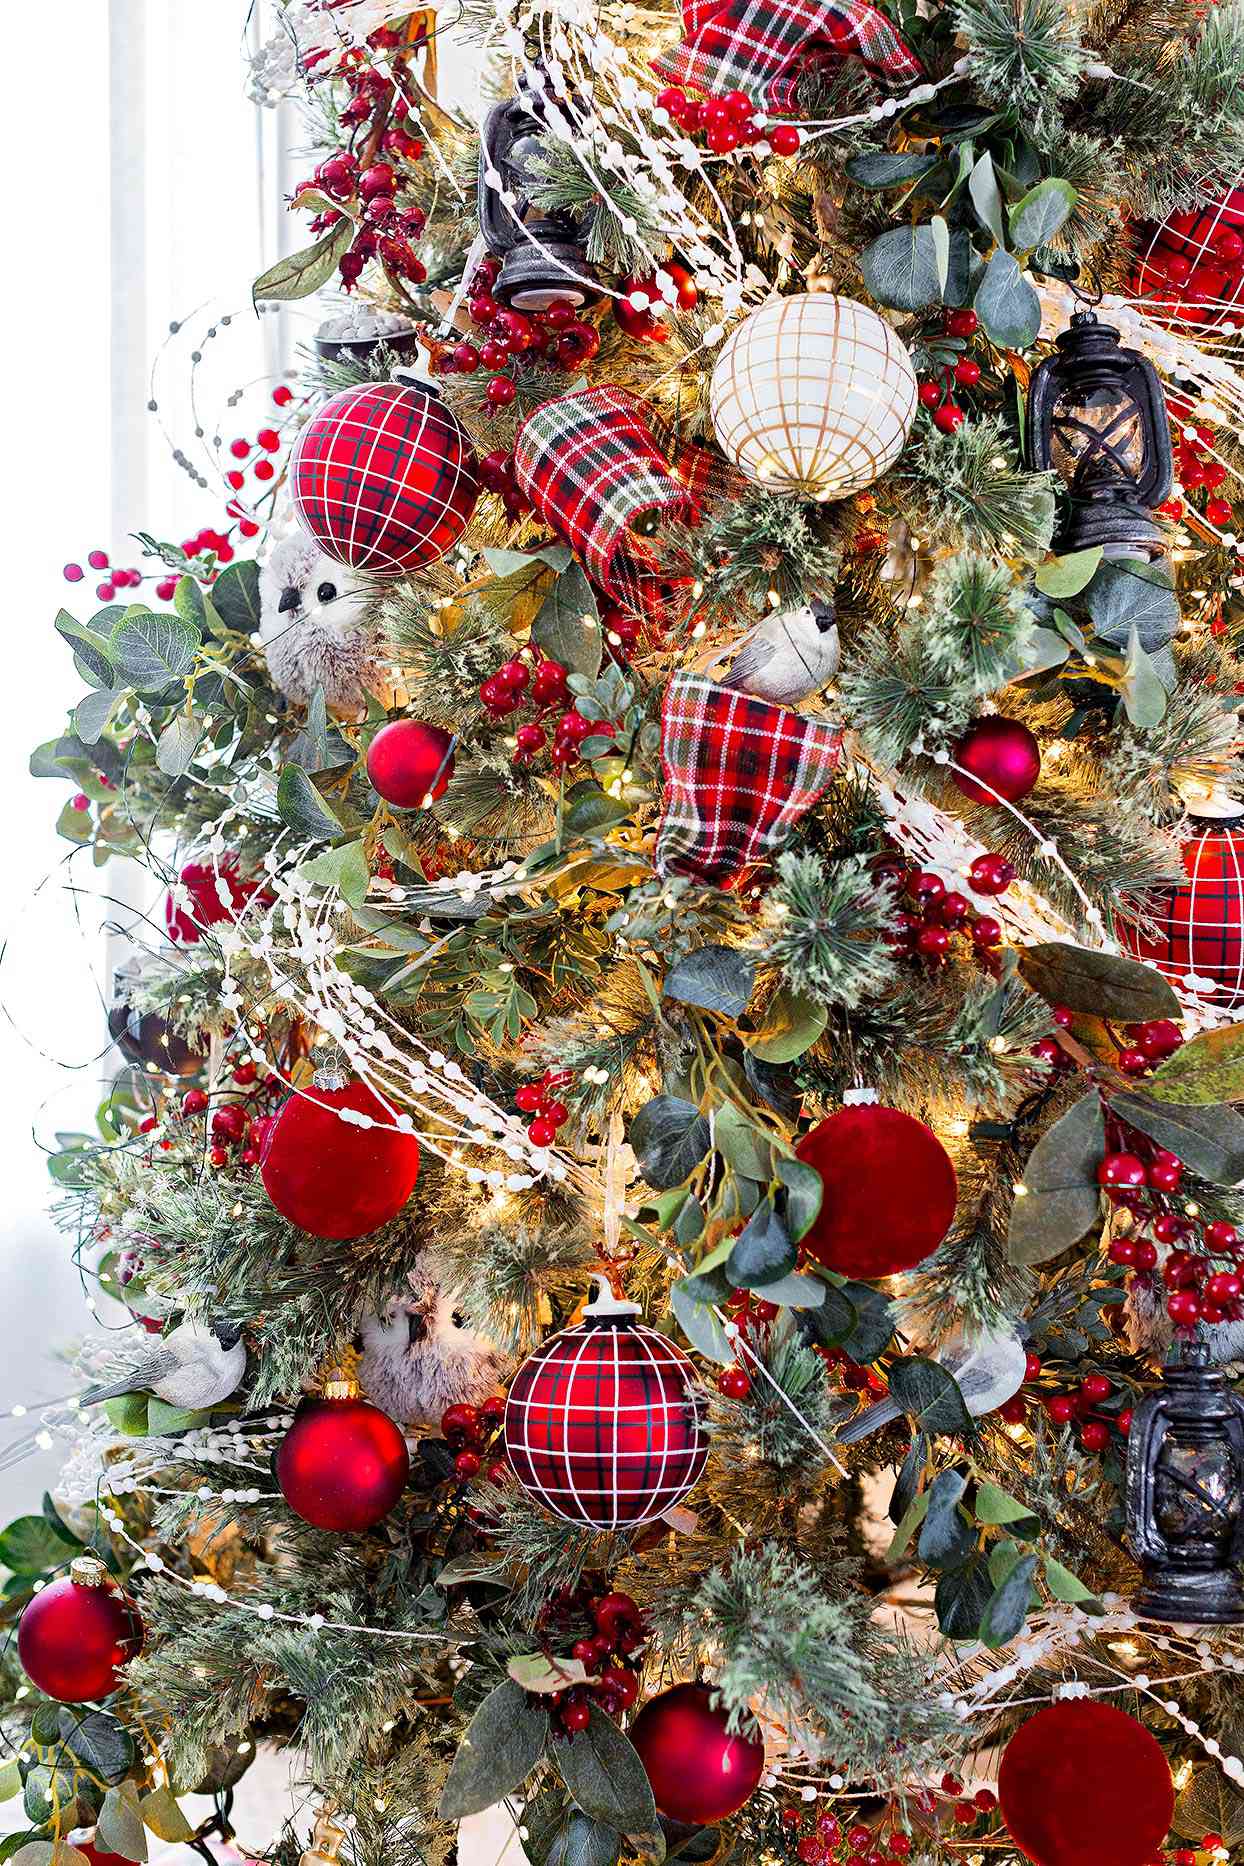 Xmas Tree Ornaments Christmas Green Ribbon Decoration Home Party Holiday Decor 